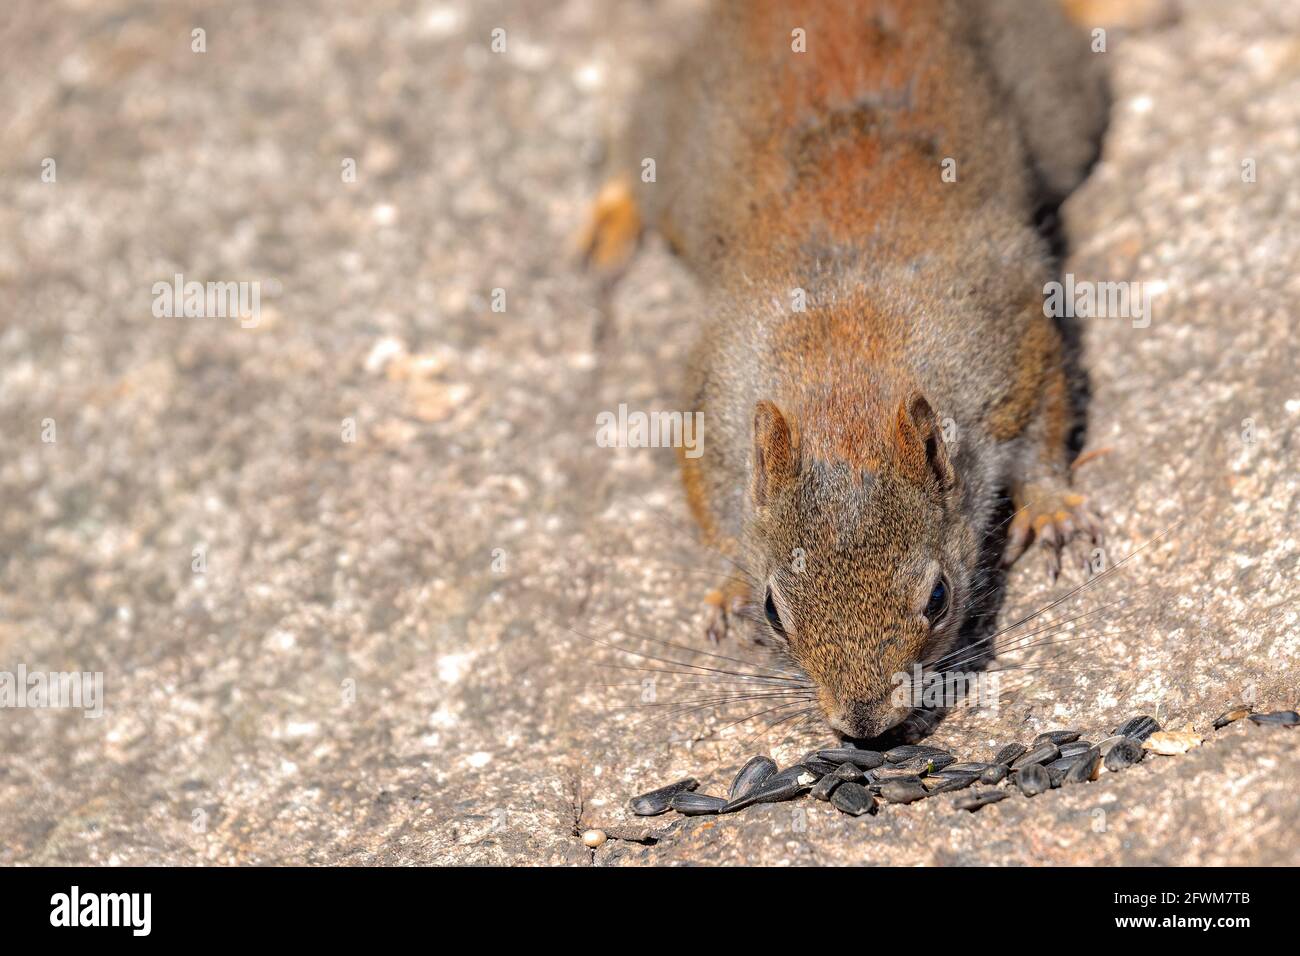 Un écureuil rouge timide mais curieux examine avec prudence une petite pile de graines de tournesol sur une roche. Il semble renifler les graines. Jour ensoleillé. Banque D'Images